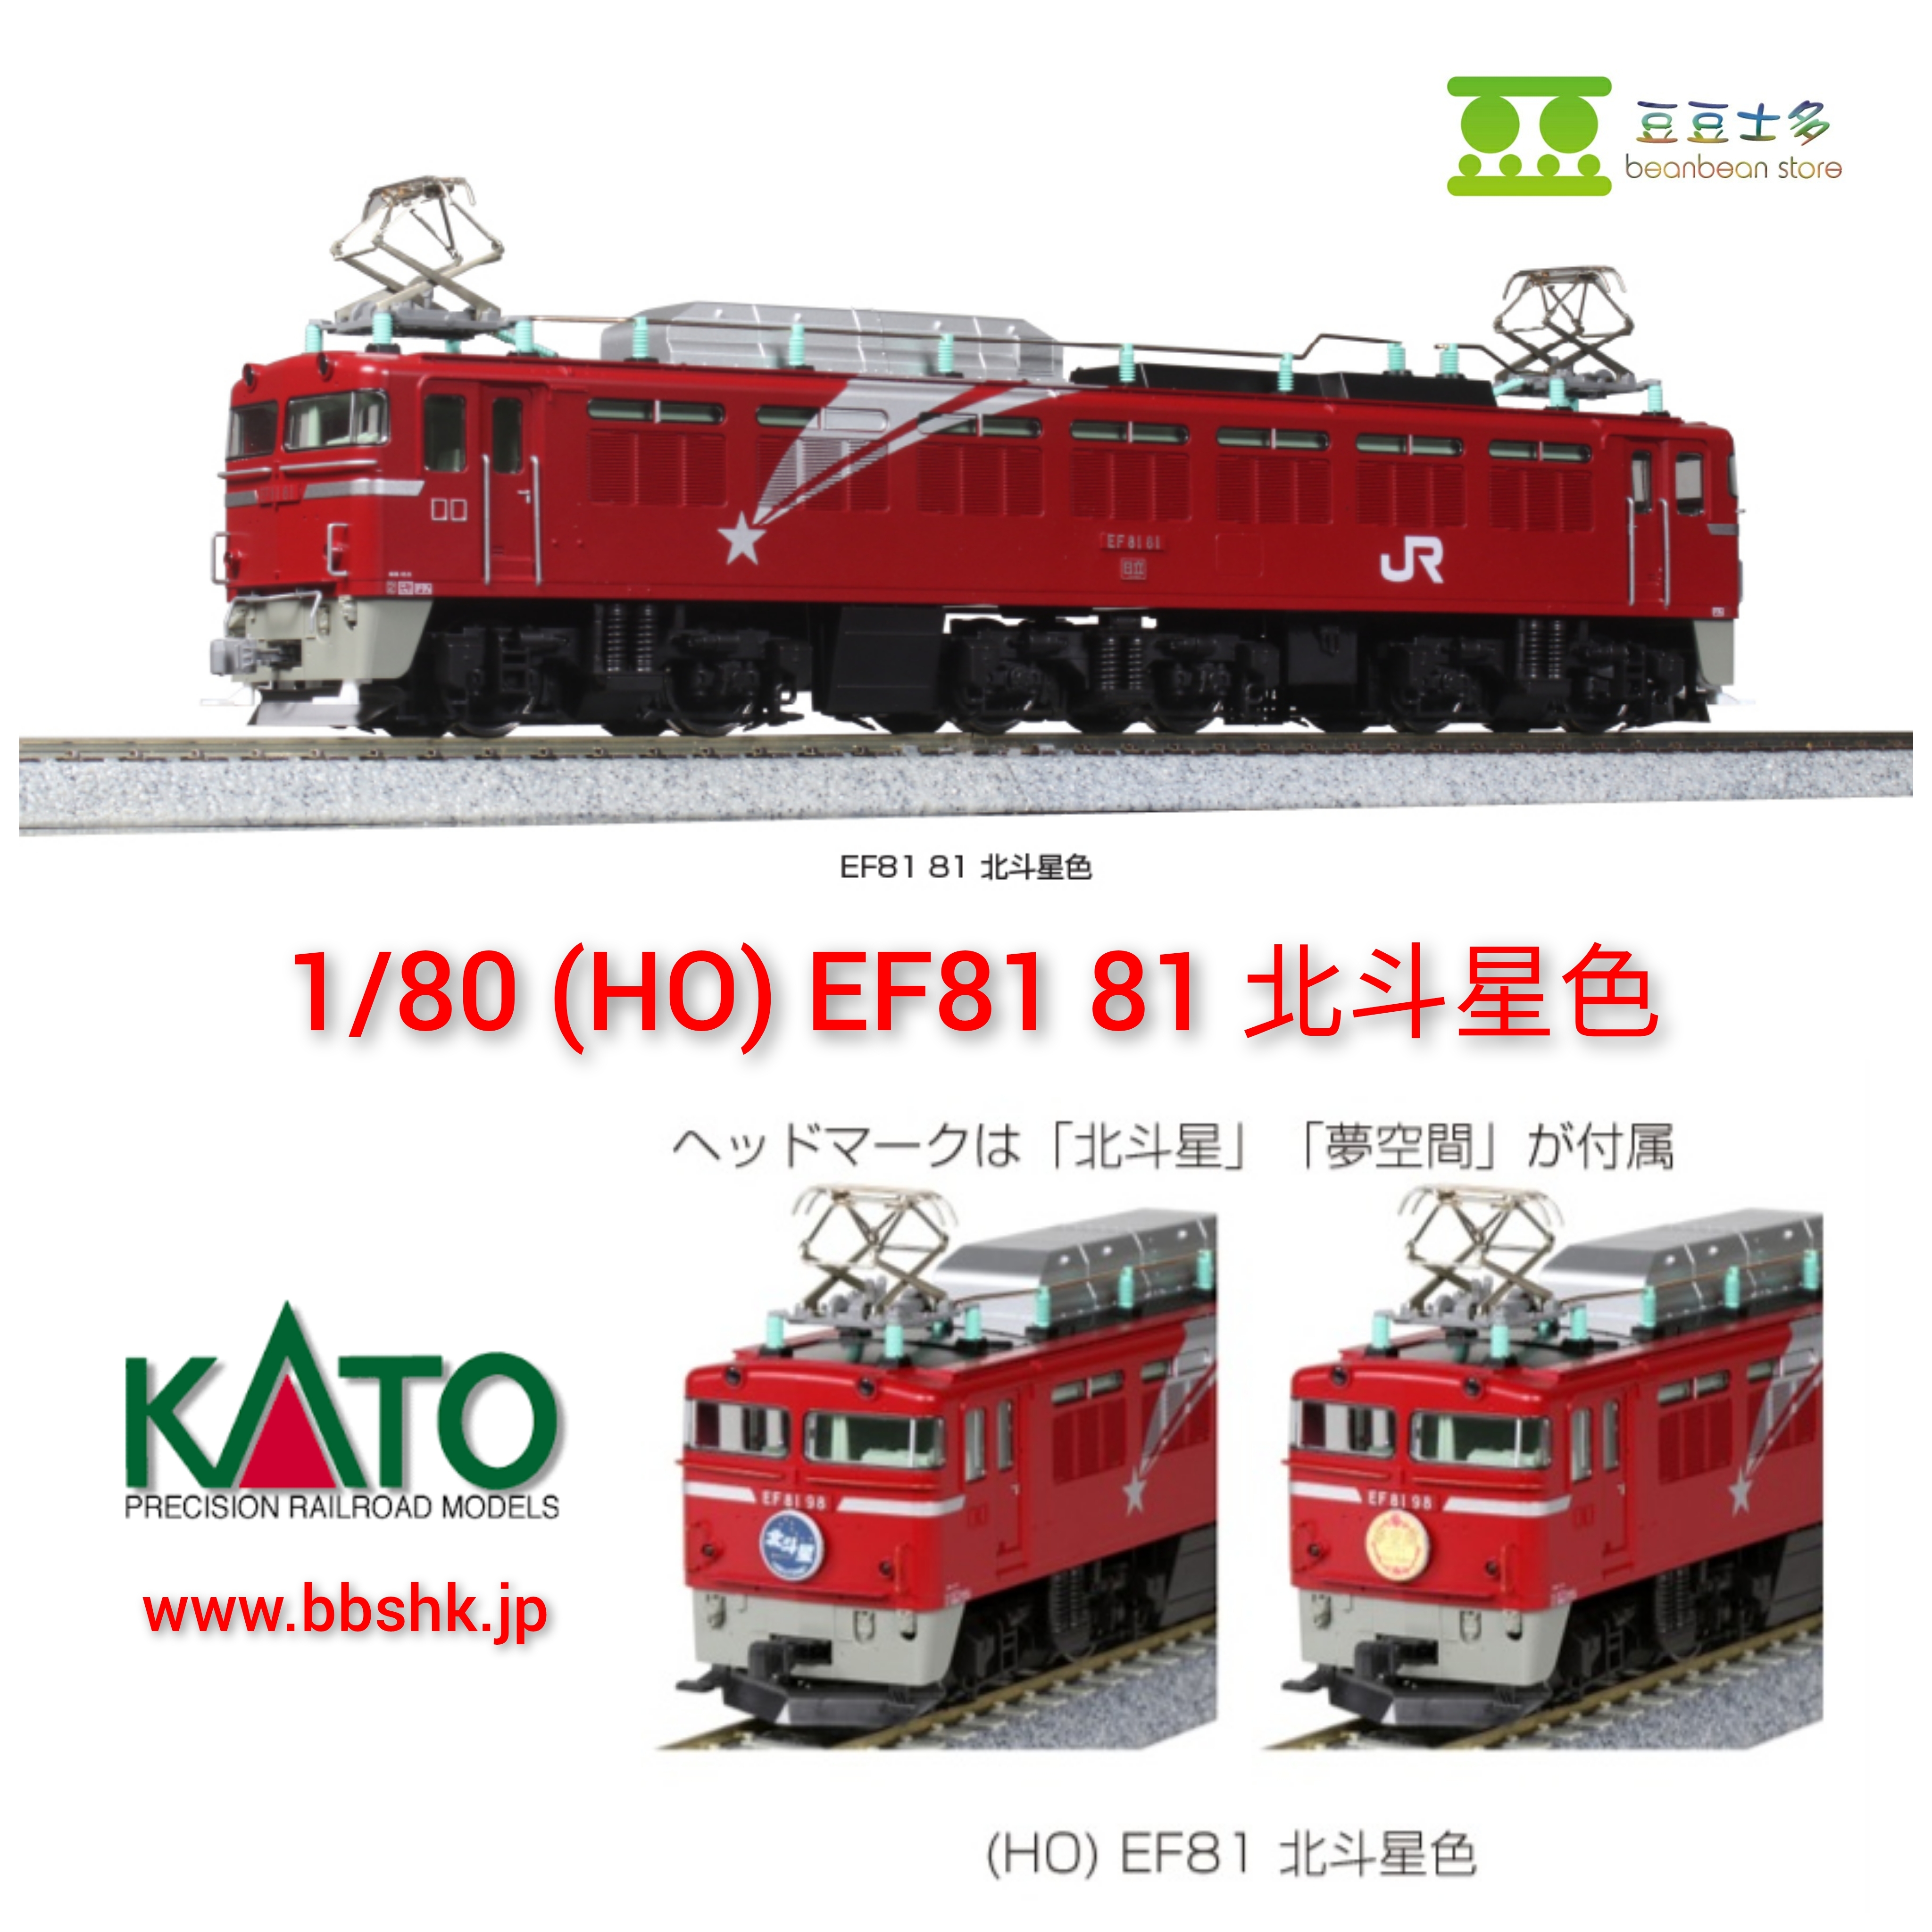 KATO 1-323 16番(HO) EF81 81 北斗星色